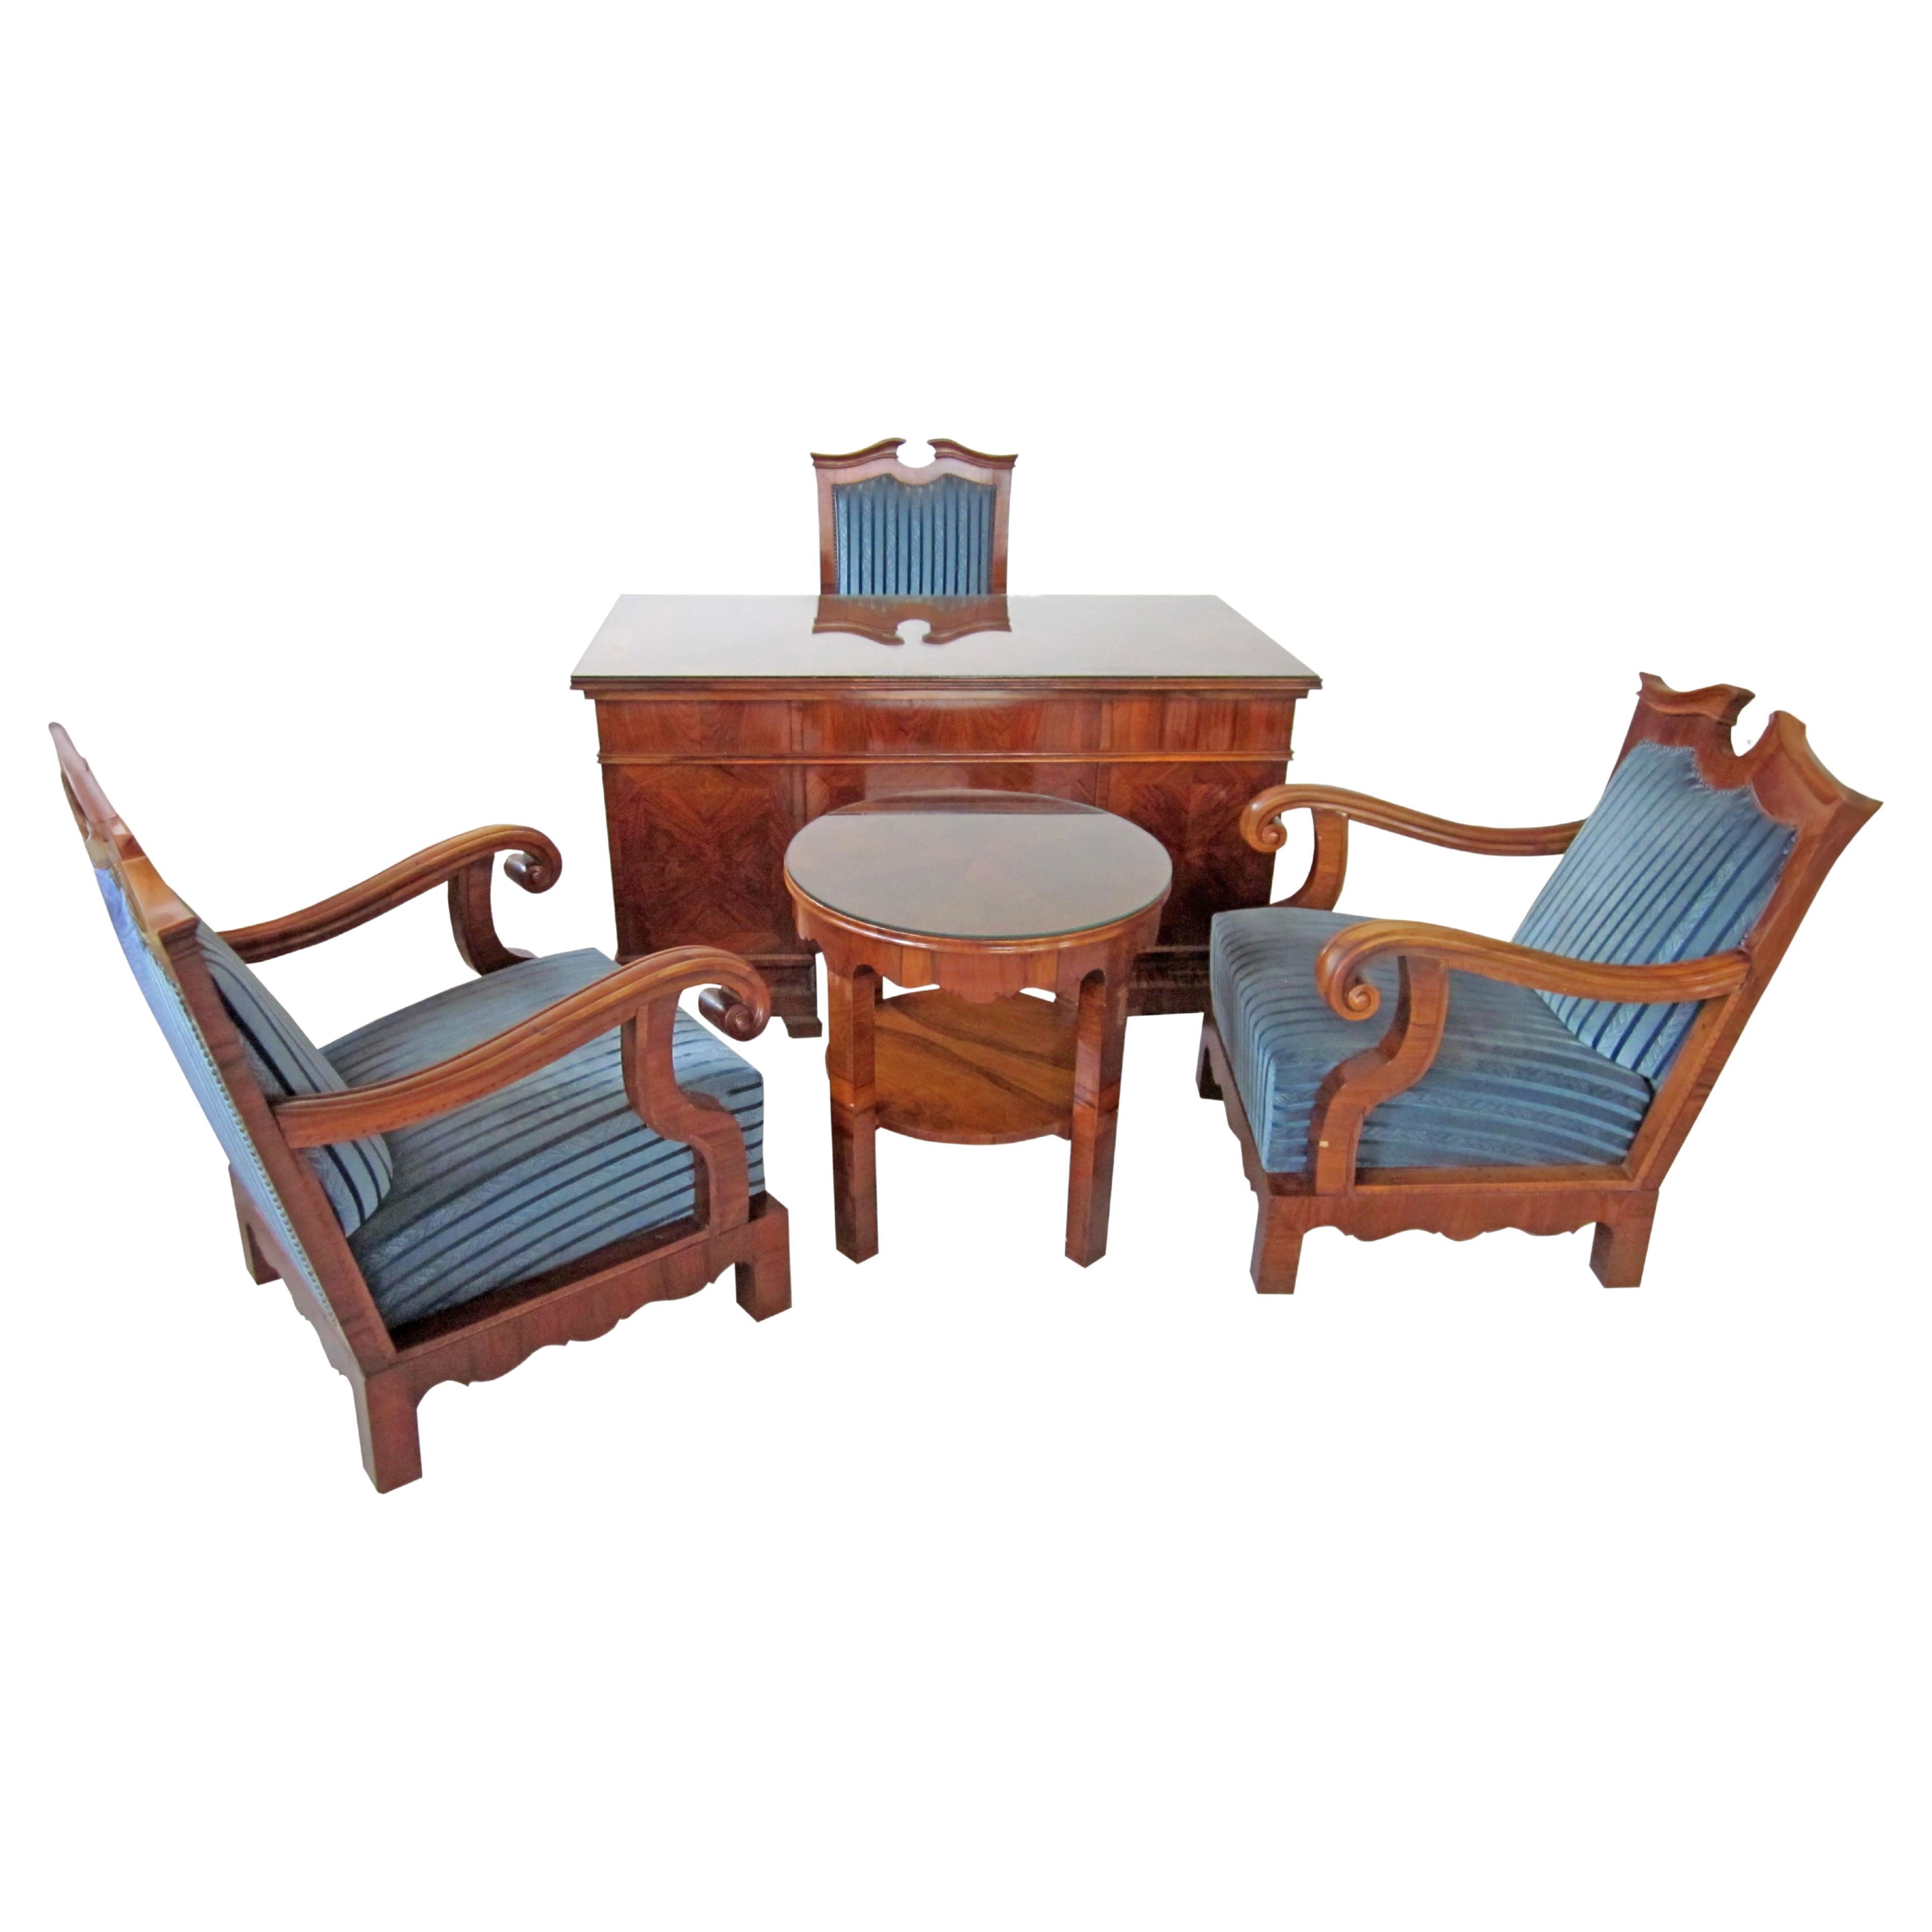 Büromöbel-Set des späten 19. Jahrhunderts - 1 Schreibtisch, 1 Tisch, 3 Sessel